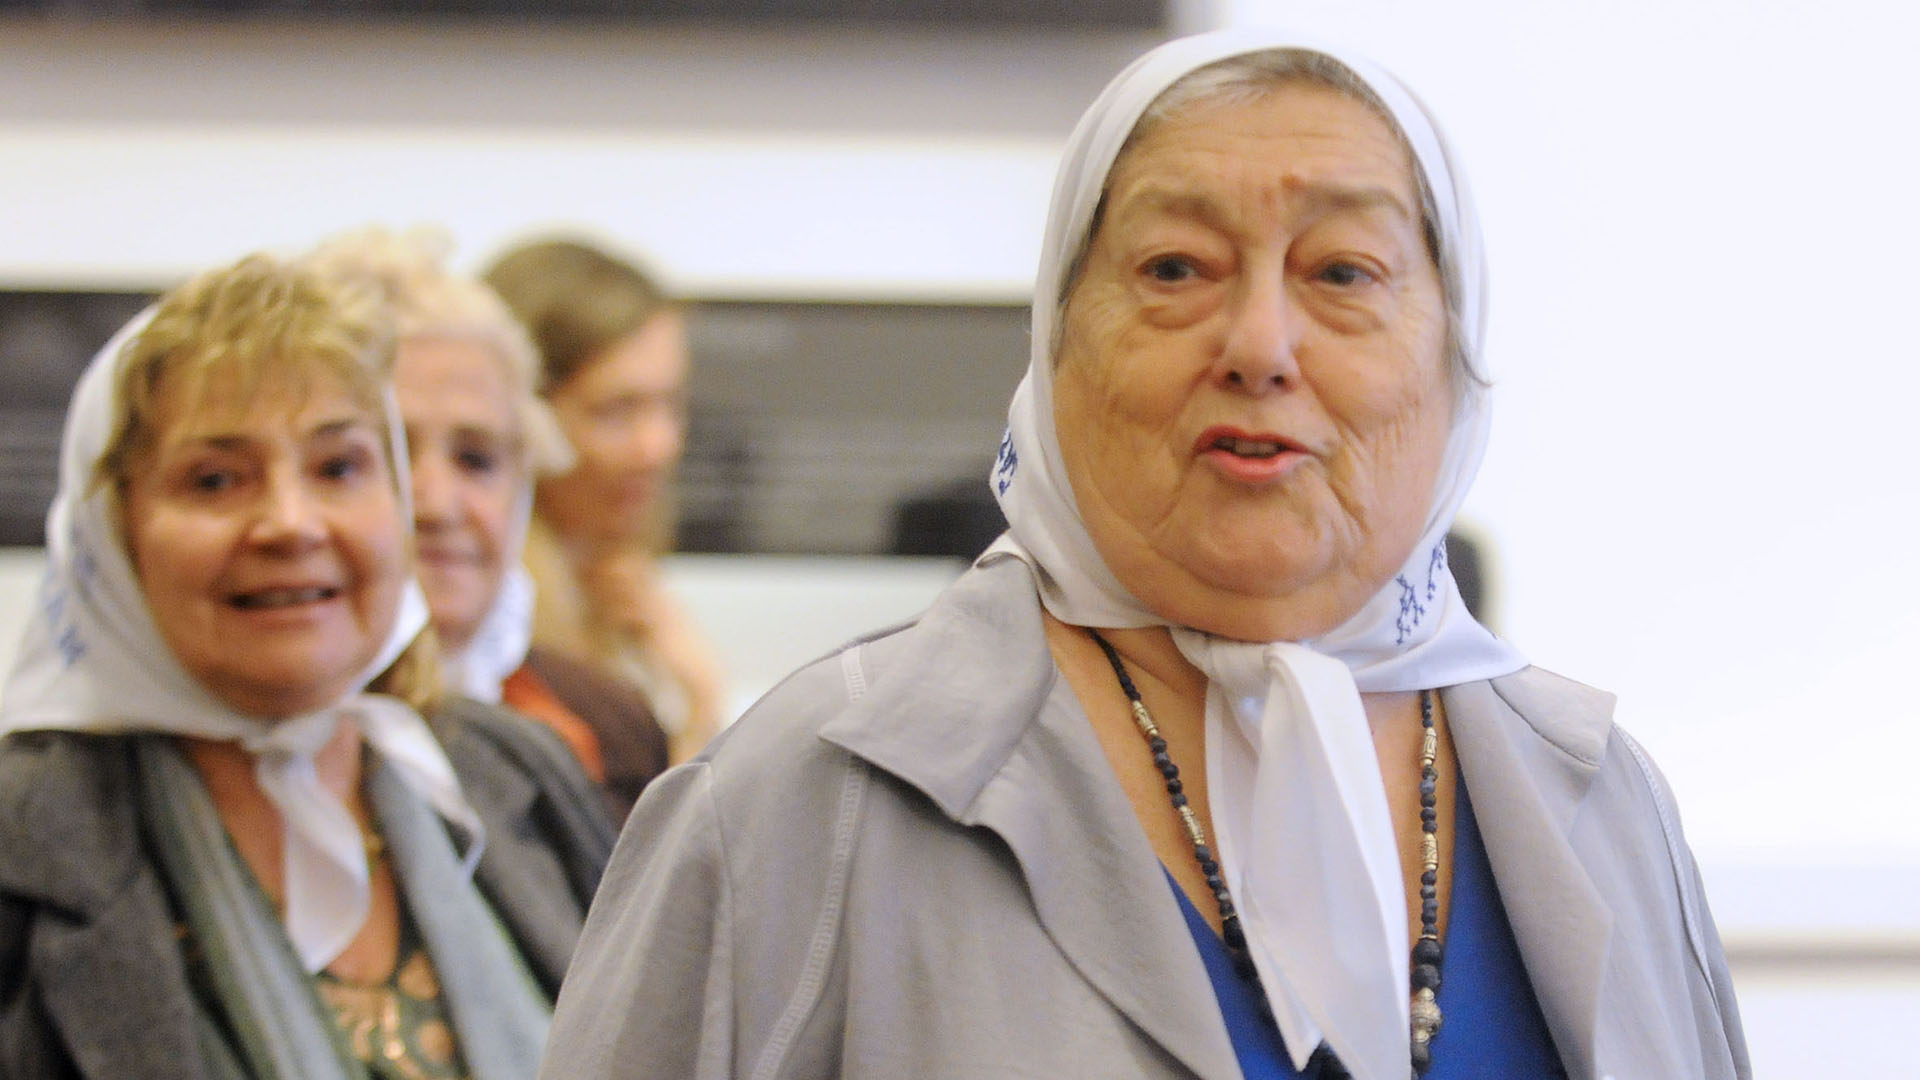 Hebe de Bonafini, 20 de noviembre de 2022, 93 años. Madre de dos hijos desaparecidos, defensora y activista de los derechos humanos, fundadora de la Asociación Madres de Plaza de Mayo